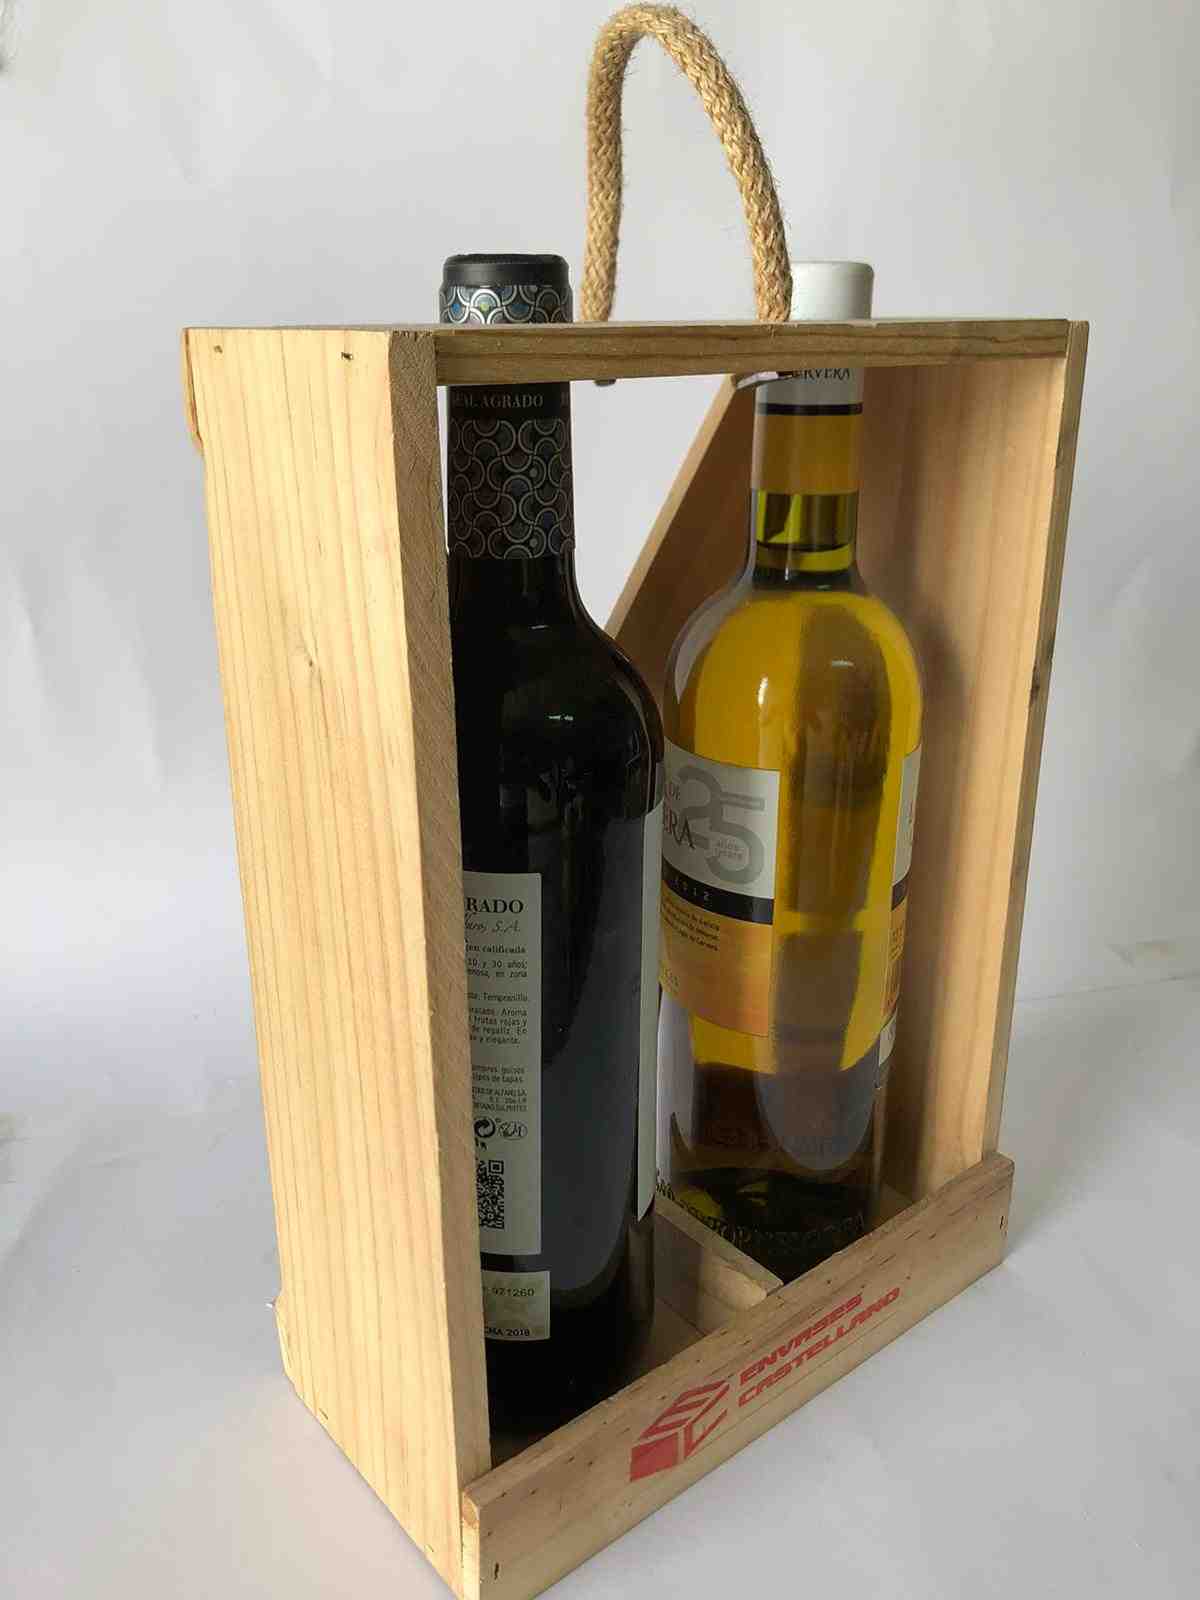 Final Belicoso Siesta Cajas de madera descubierta para 2 botellas de vino | Cajas para vinos